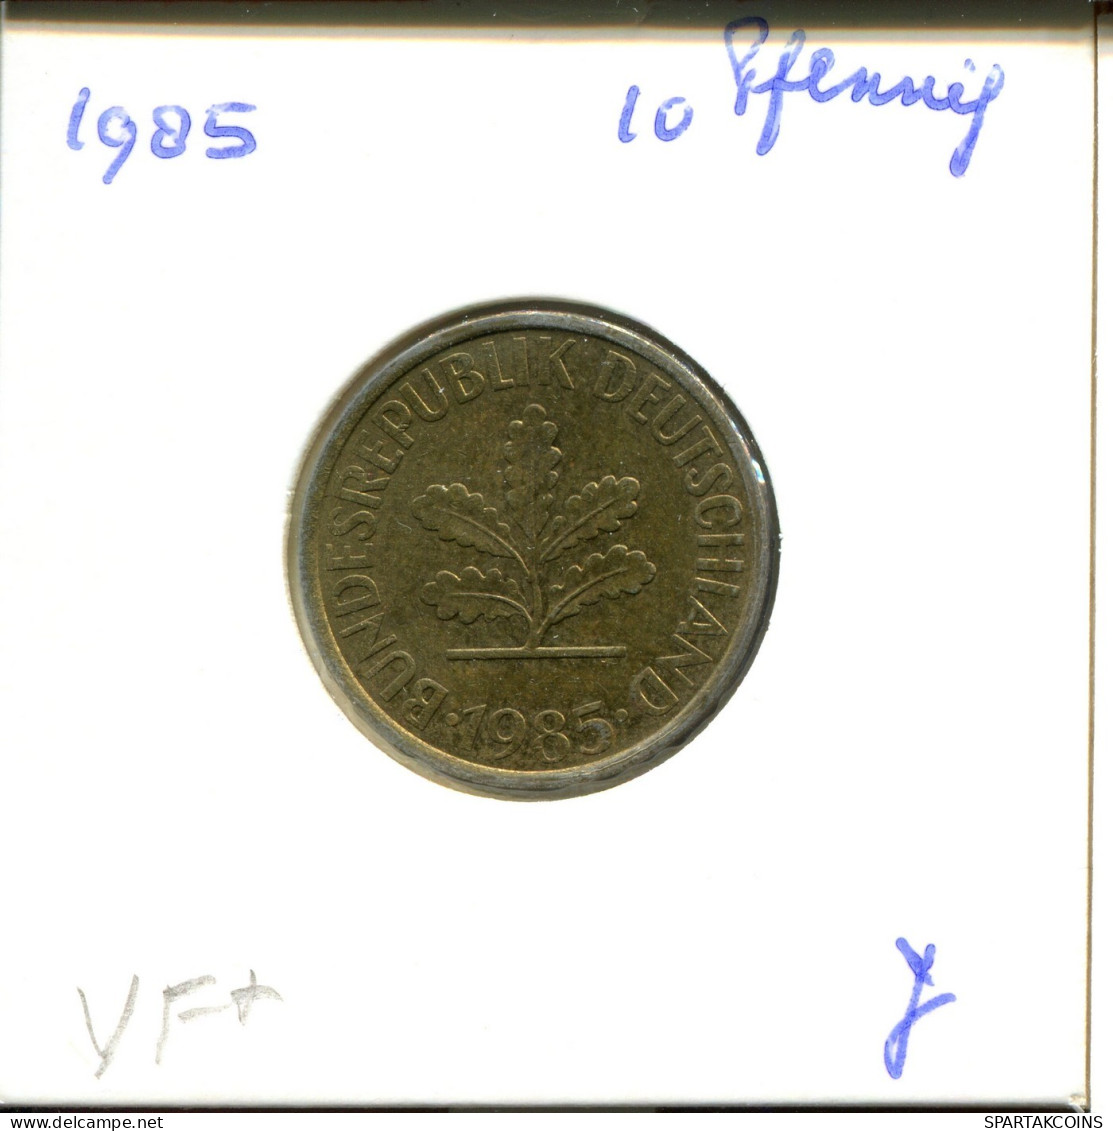 10 PFENNIG 1985 J BRD ALEMANIA Moneda GERMANY #DA941.E.A - 10 Pfennig